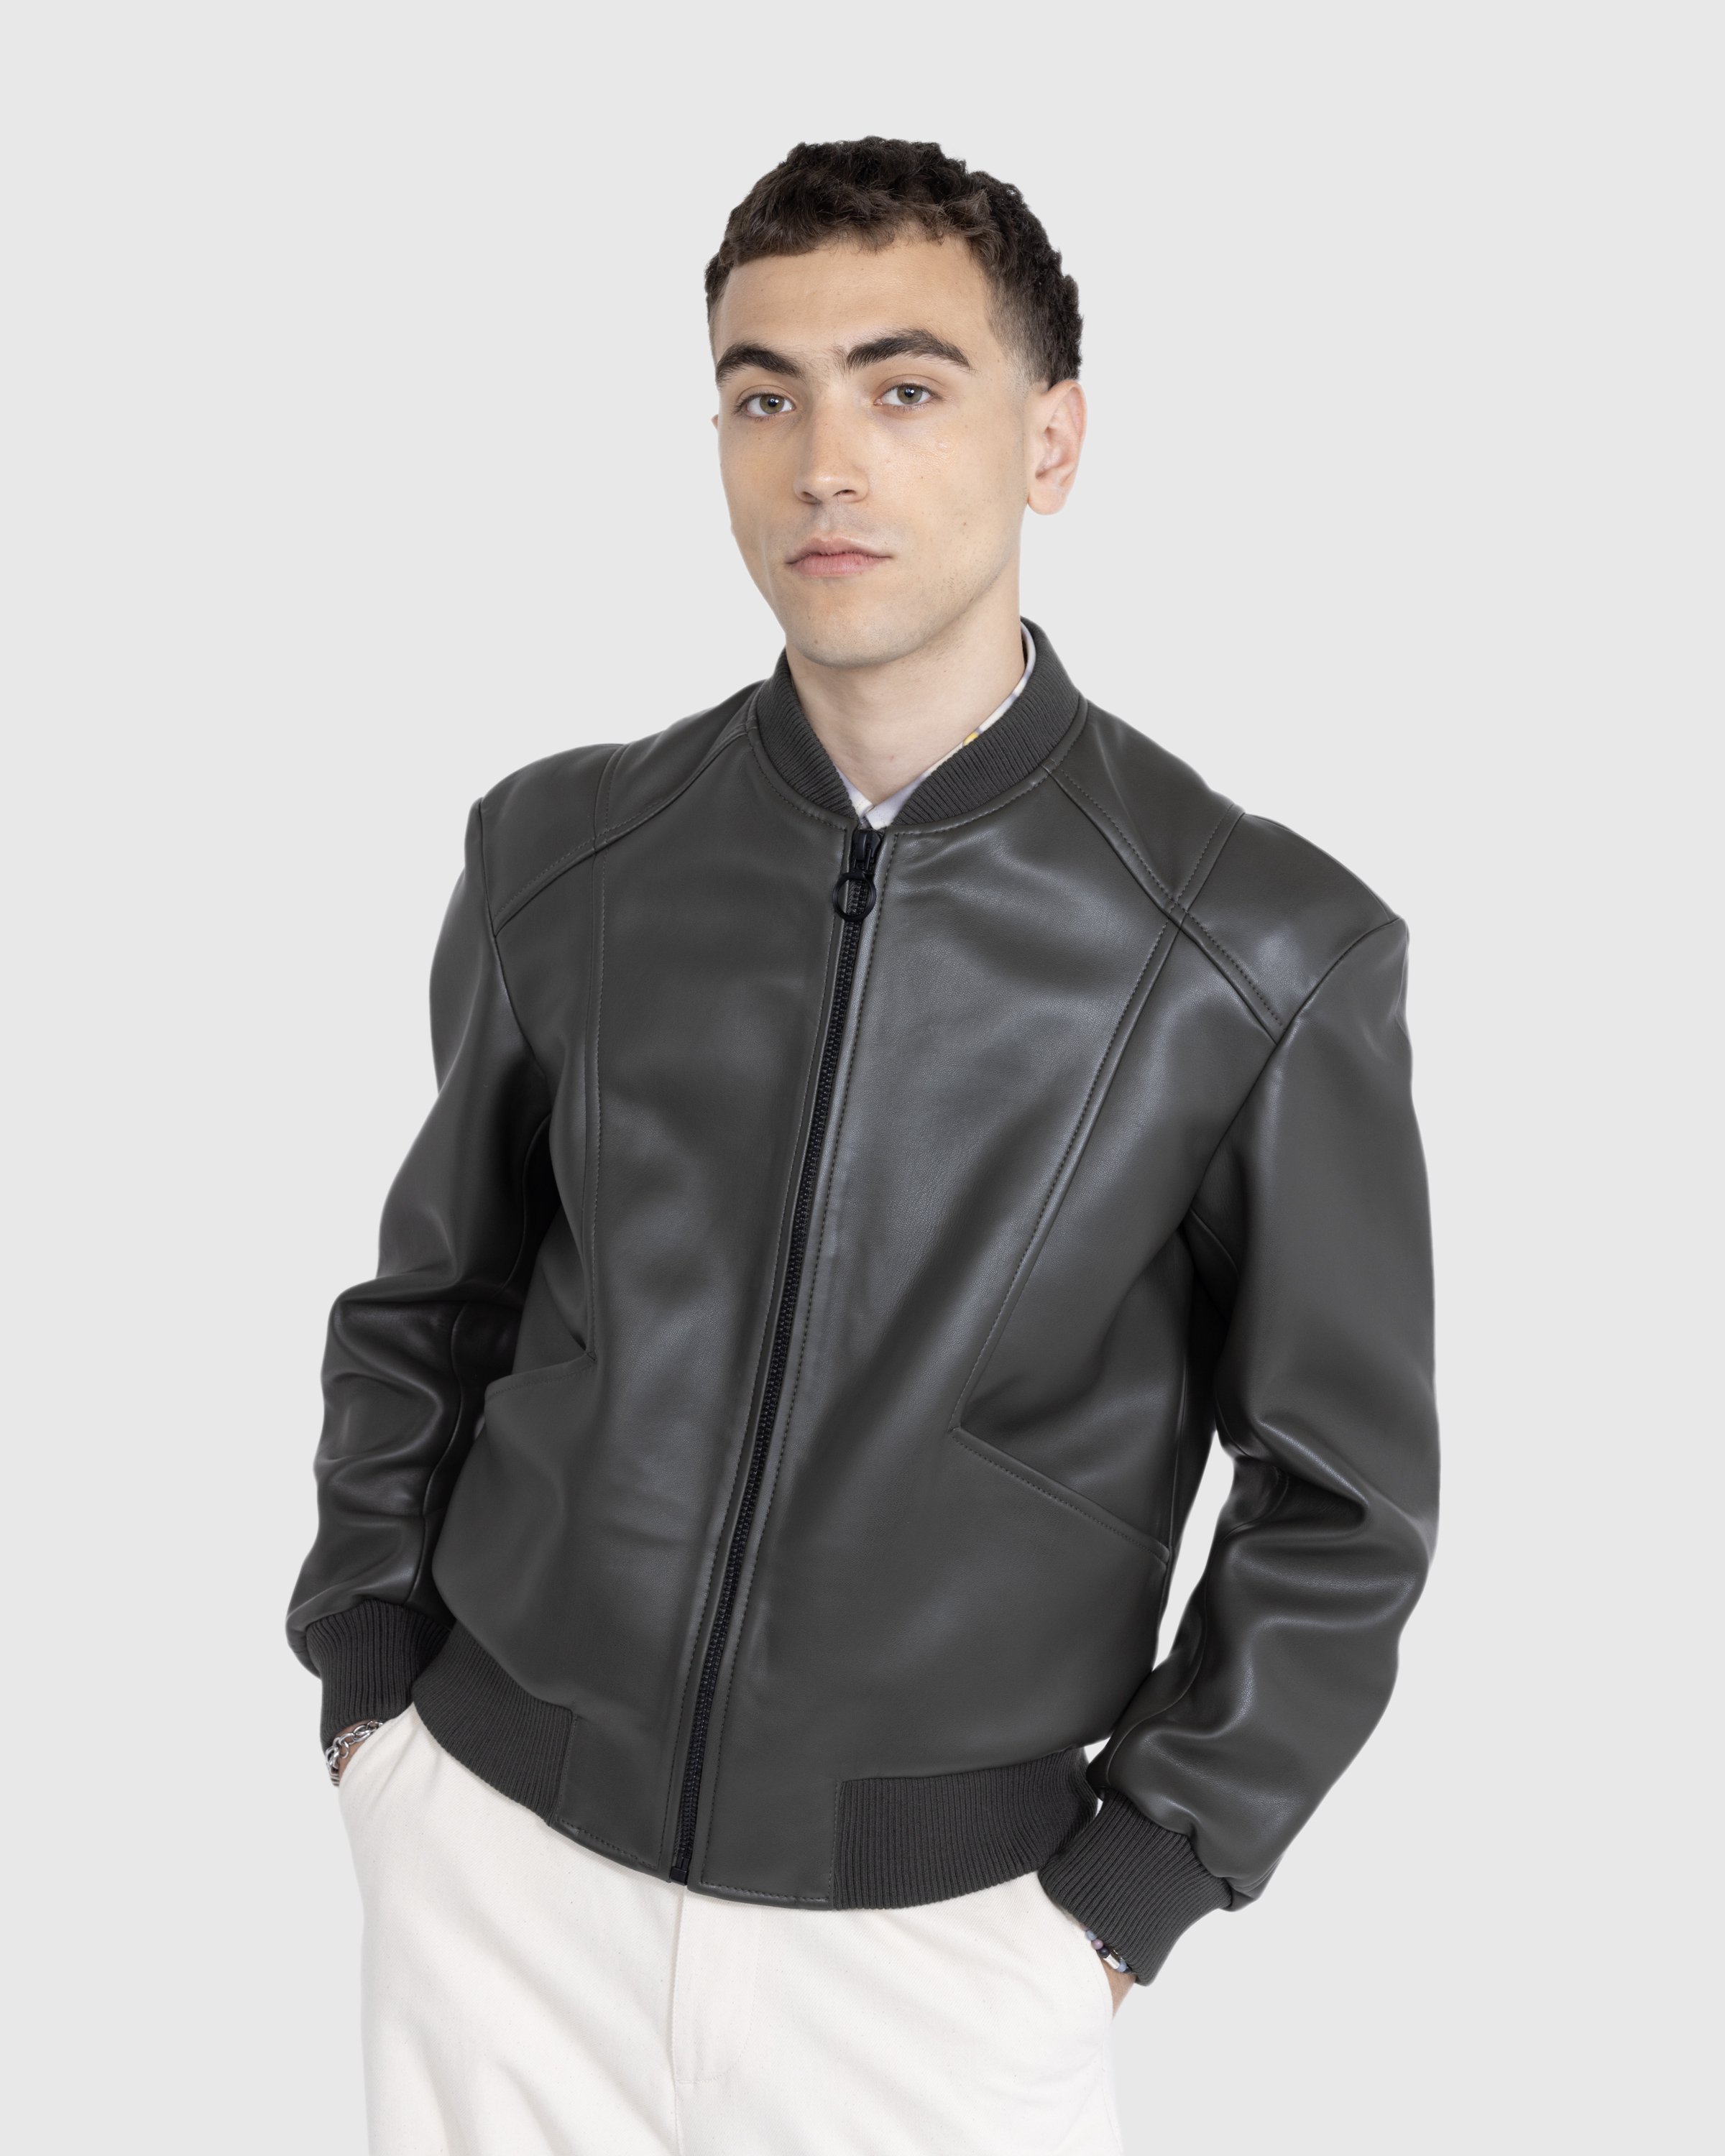 Trussardi - Jacket Faux Leather Bonded - Clothing - Green - Image 3